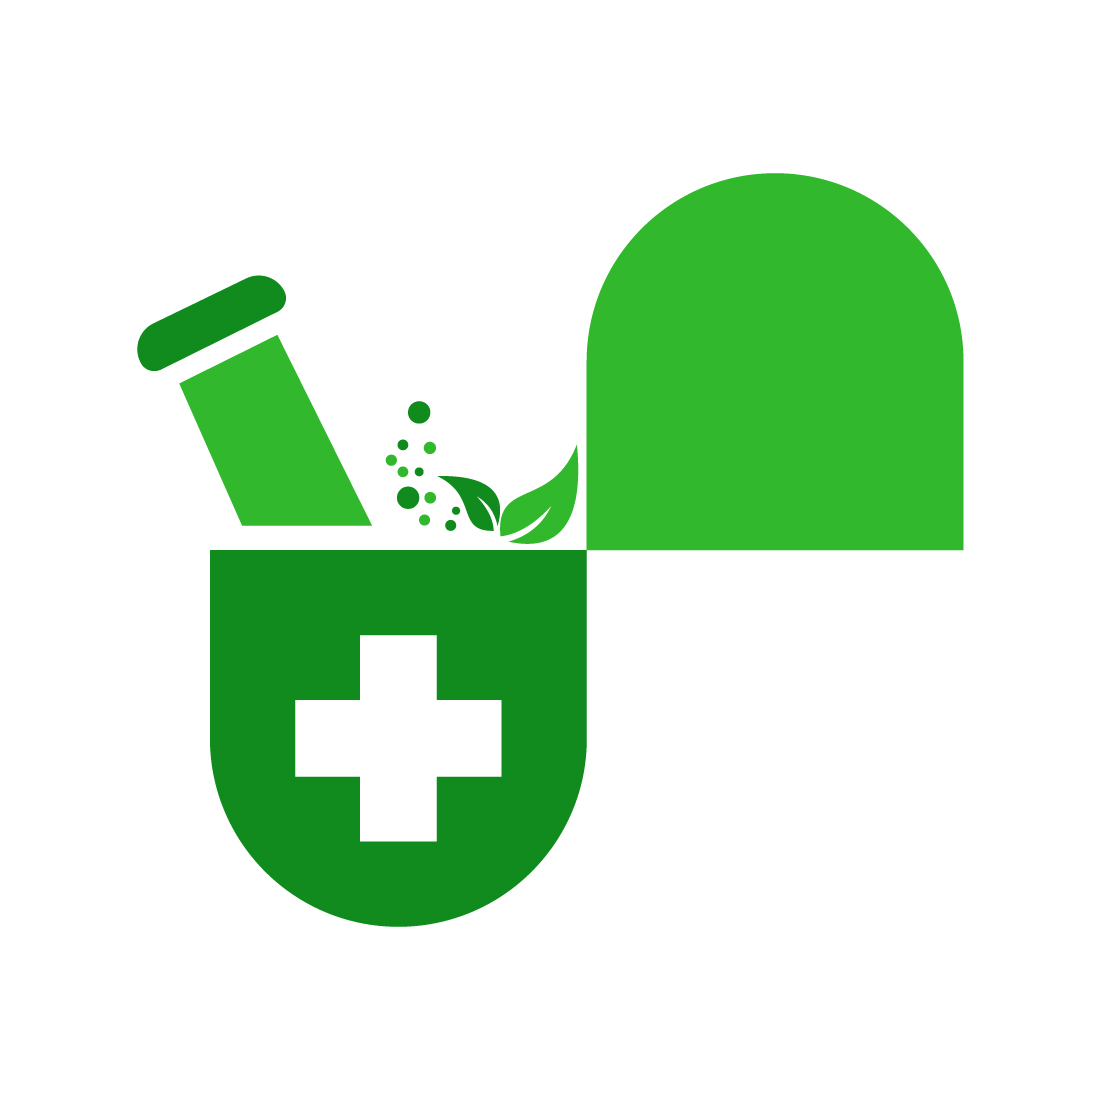 pharmacy logo images